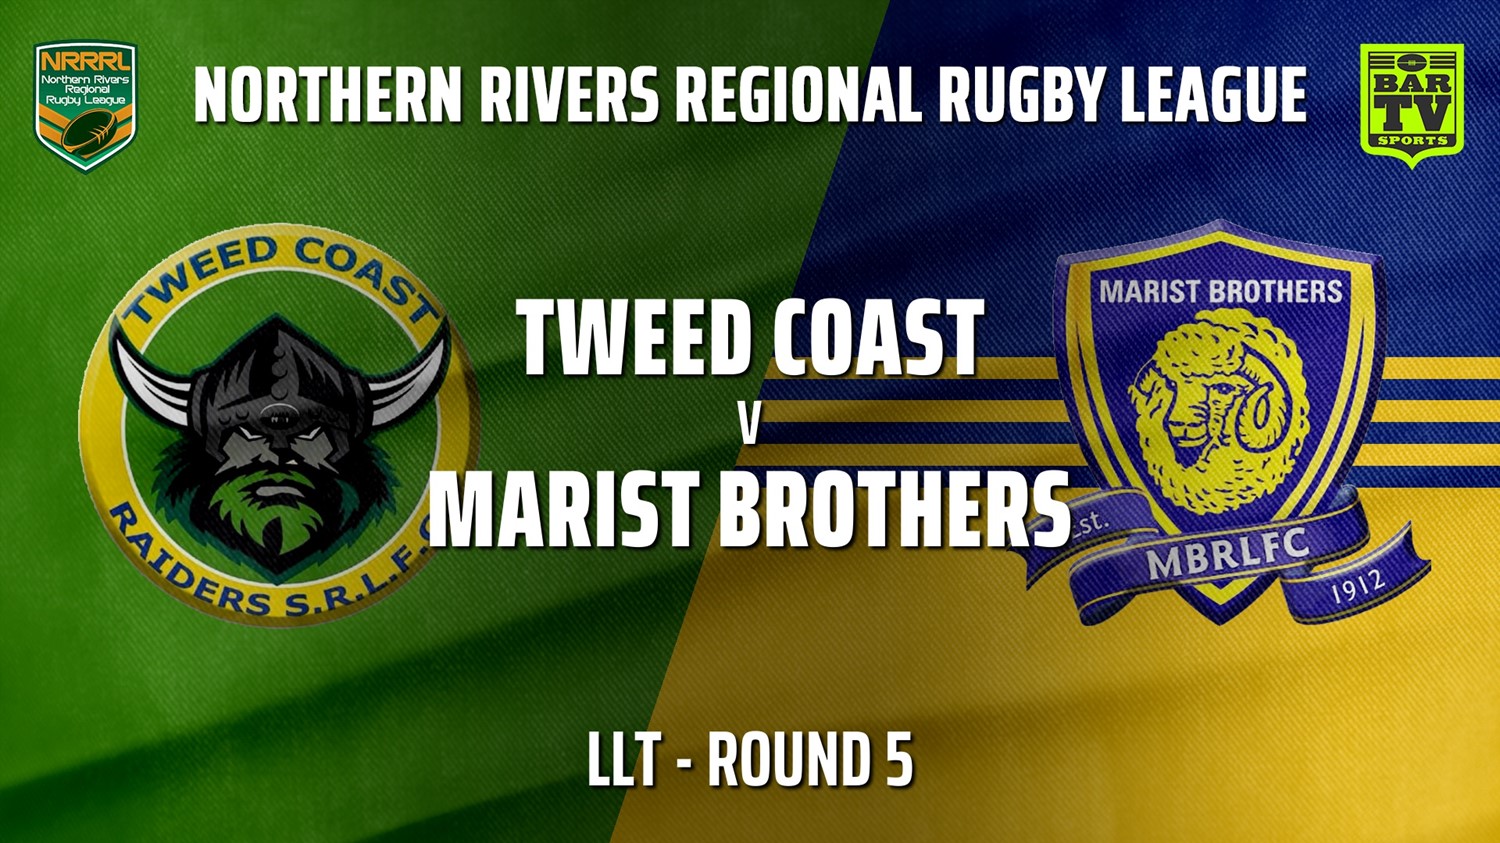 210530-NRRRL Round 5 - LLT - Tweed Coast Raiders v Lismore Marist Brothers Rams Slate Image